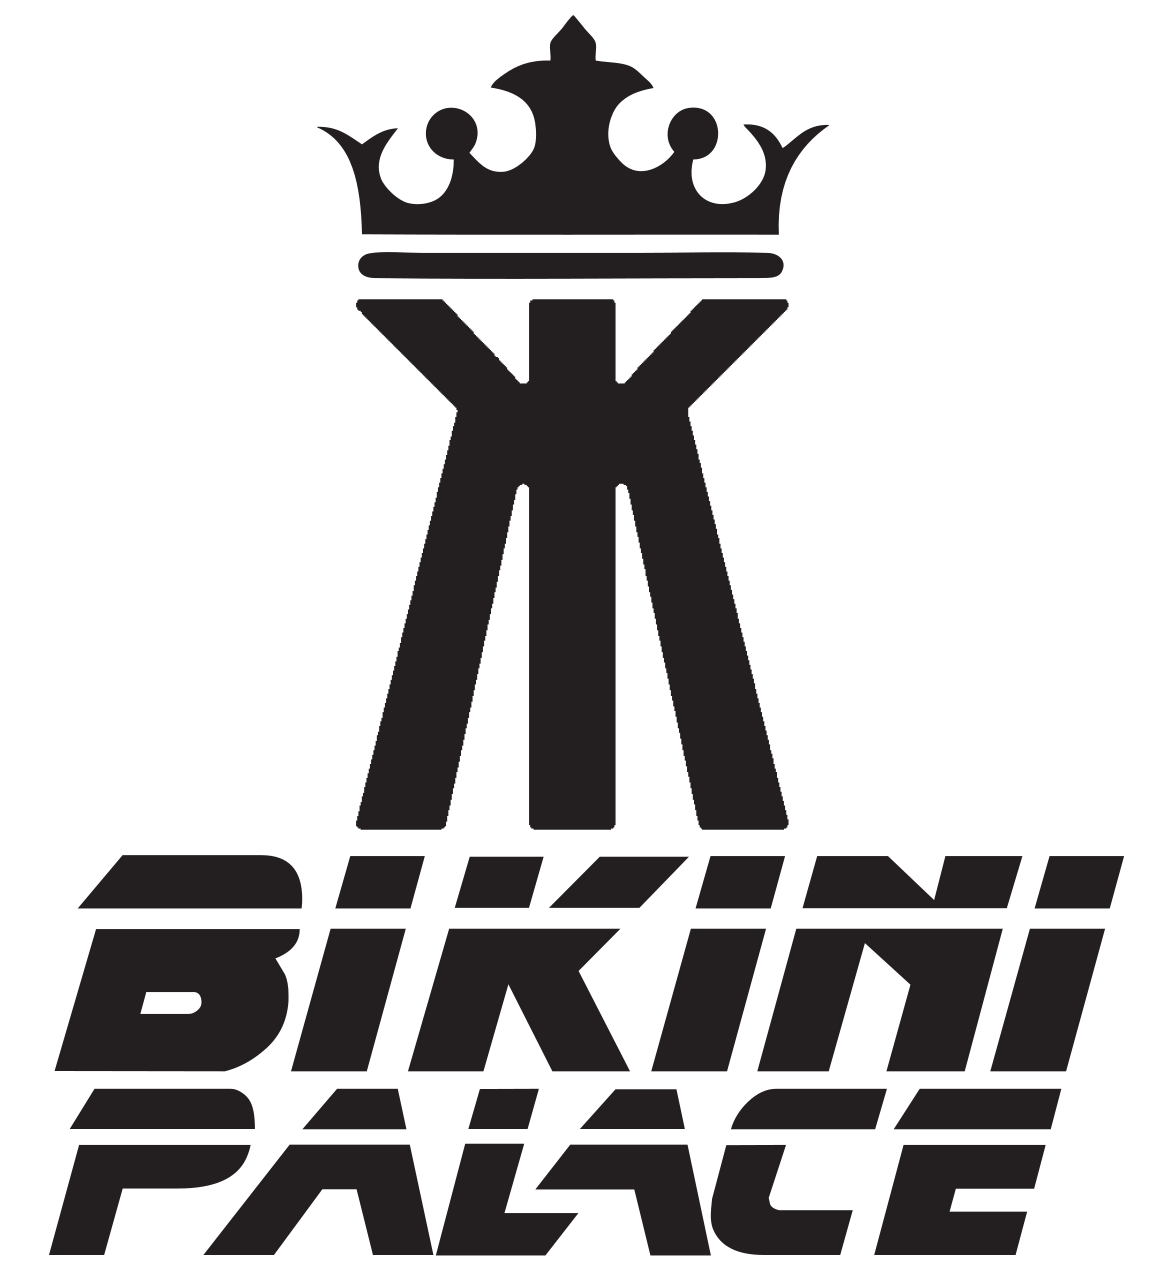 Bikini Palace